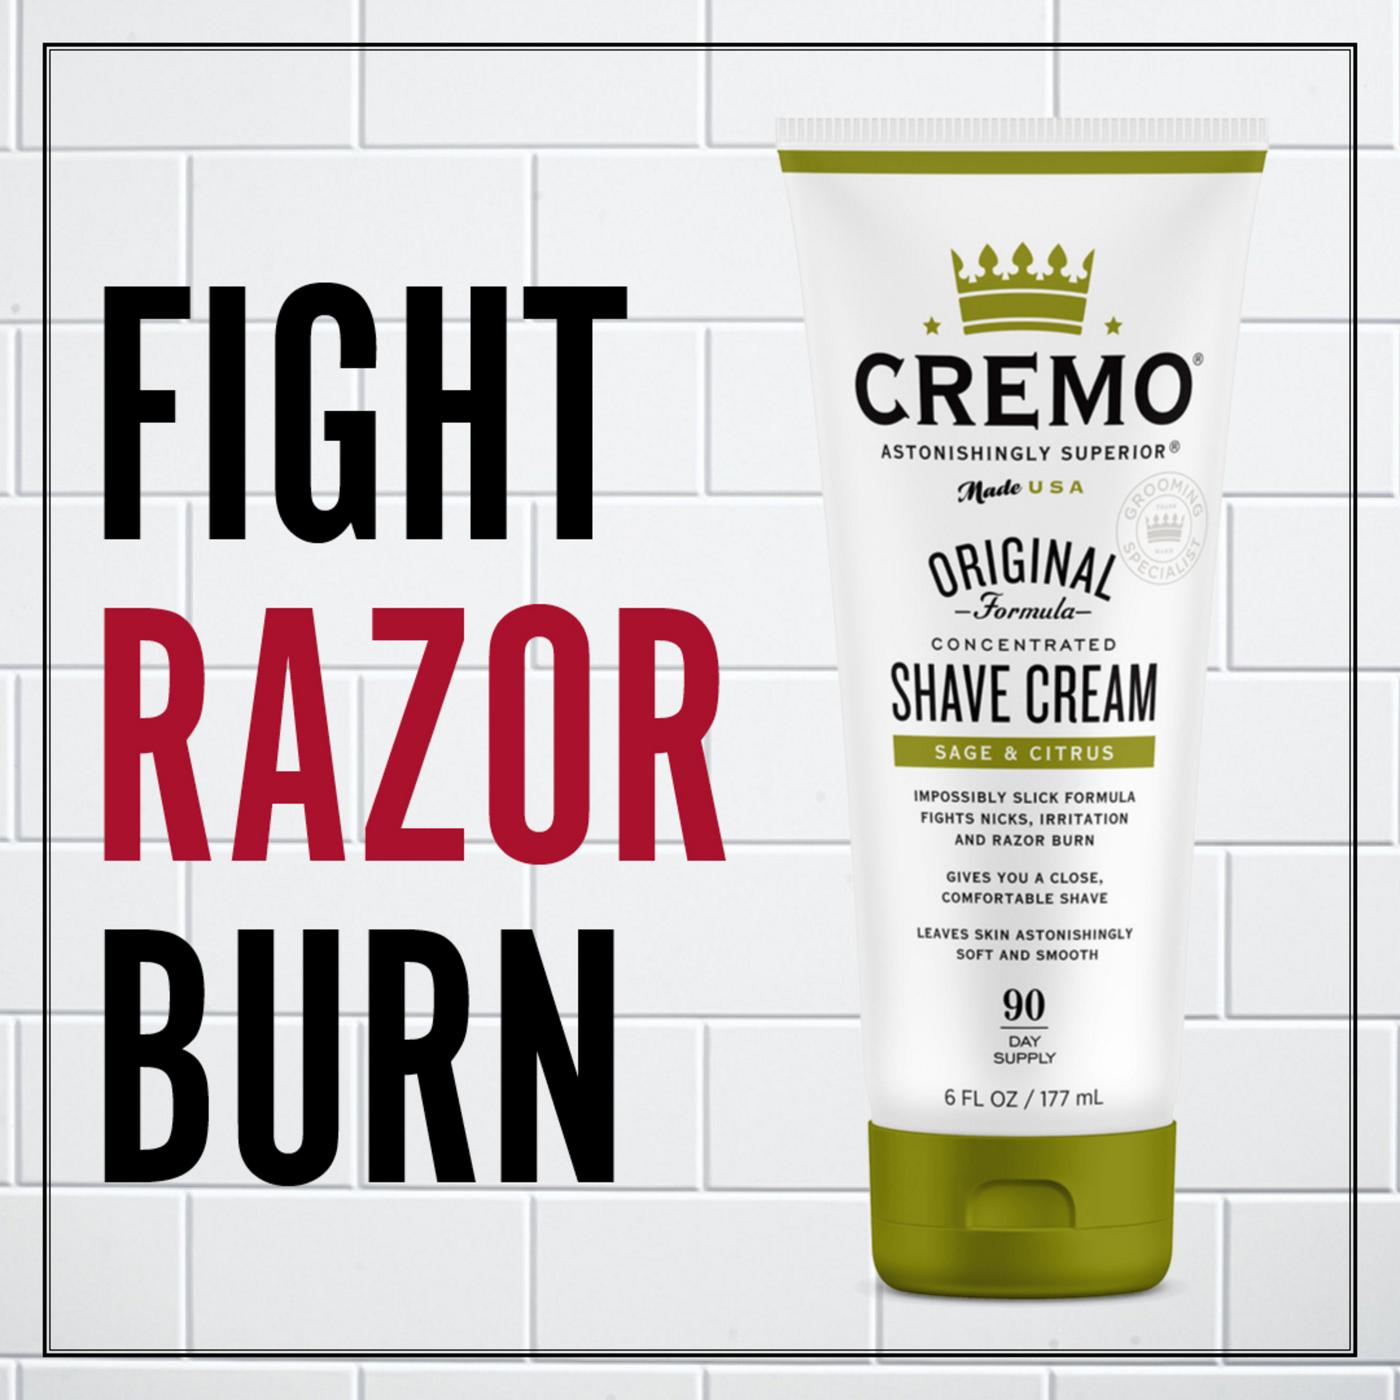 Cremo Shave Cream - Sage & Cistrus; image 2 of 6